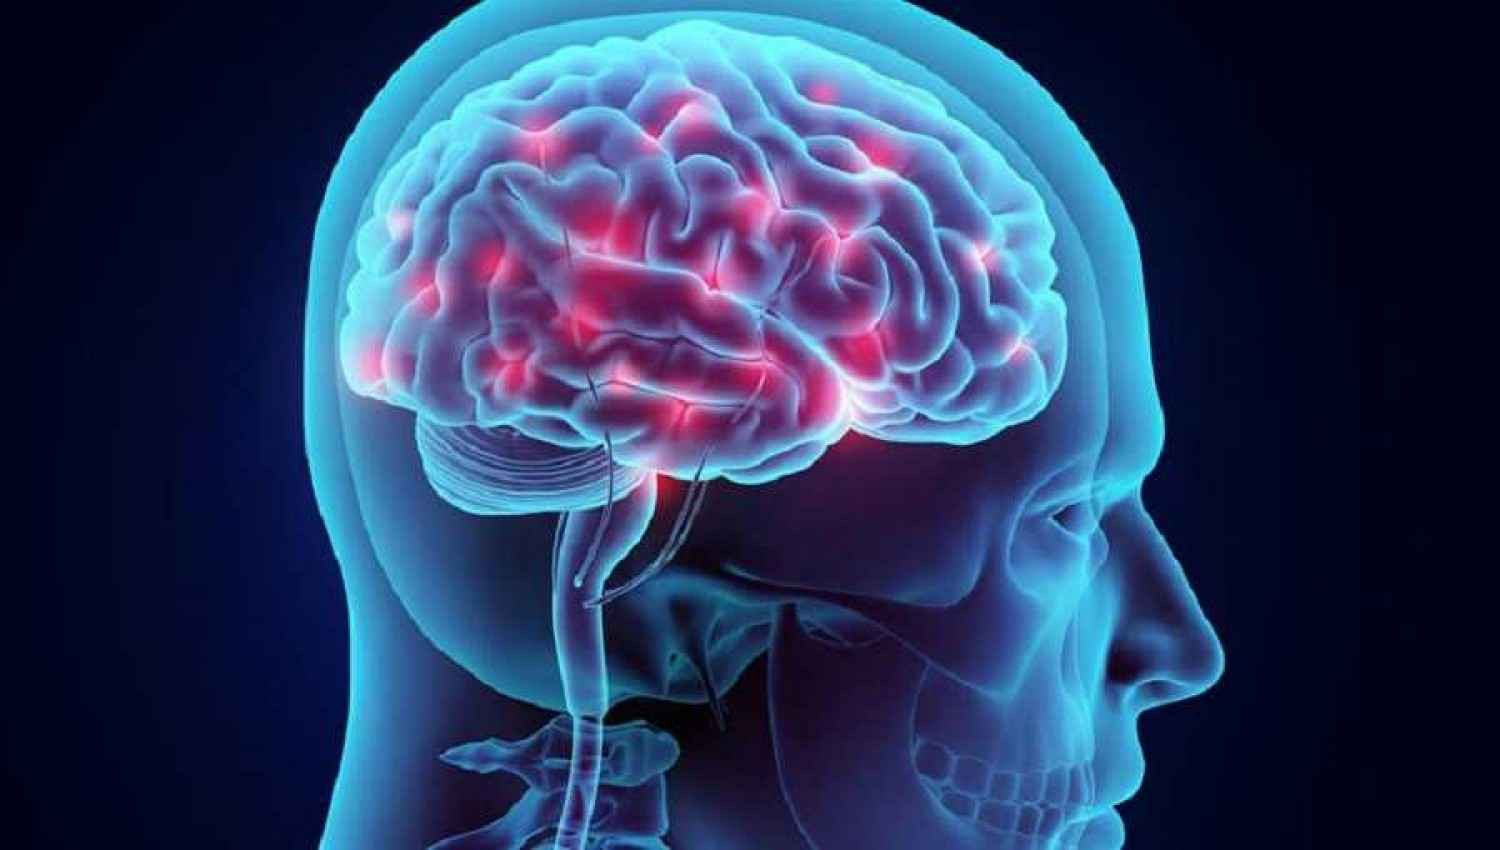 Ο εγκέφαλος της γυναίκας είναι βιολογικά «νεότερος» από τον εγκέφαλο του άντρα